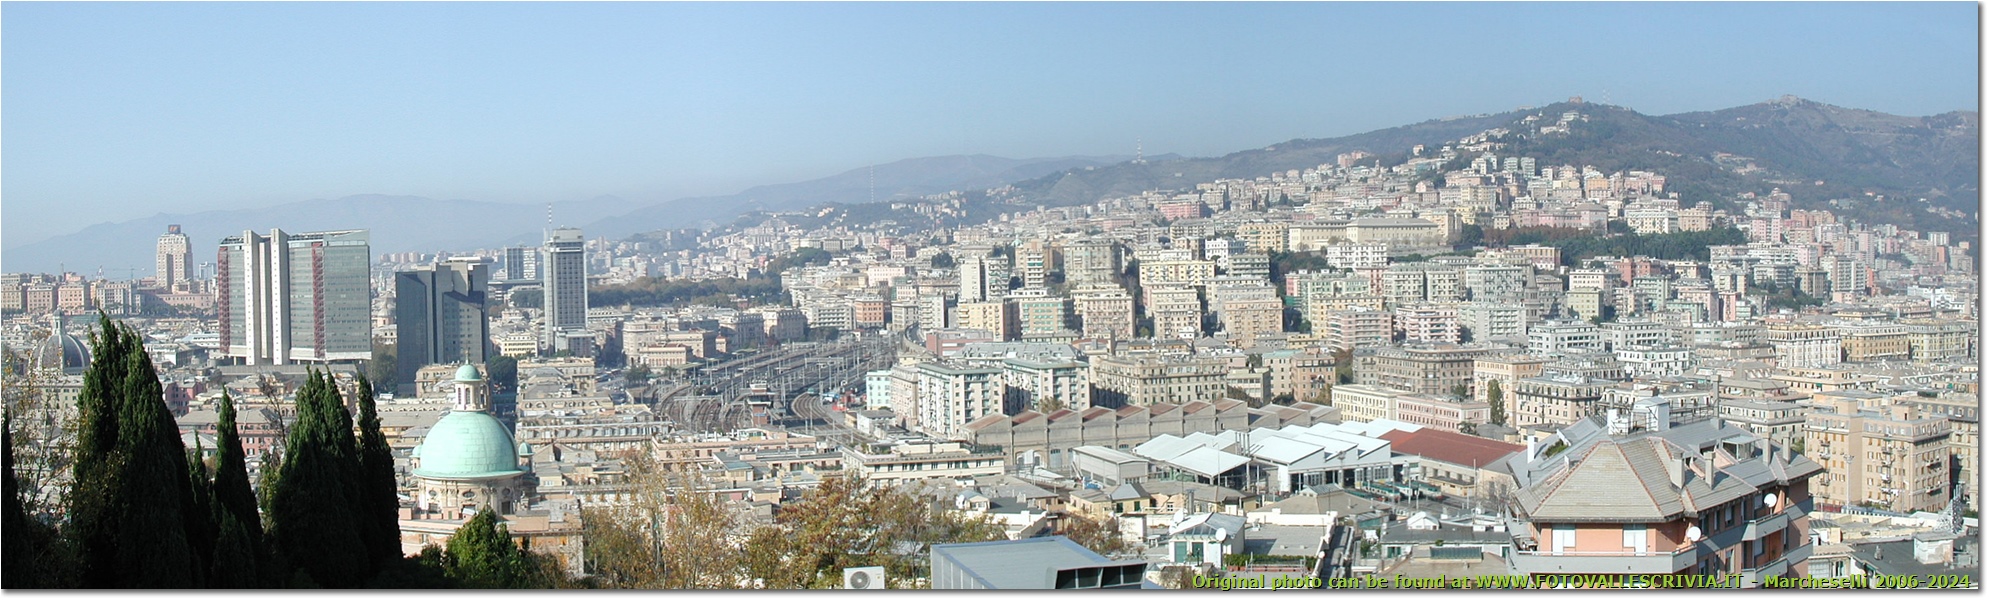 Panorama dalla Facoltà di Ingegneria: il centro di Genova e la stazione di Genova Brignole - Genova - 2005 - Paesi - Foto varie - Olympus Camedia 3000